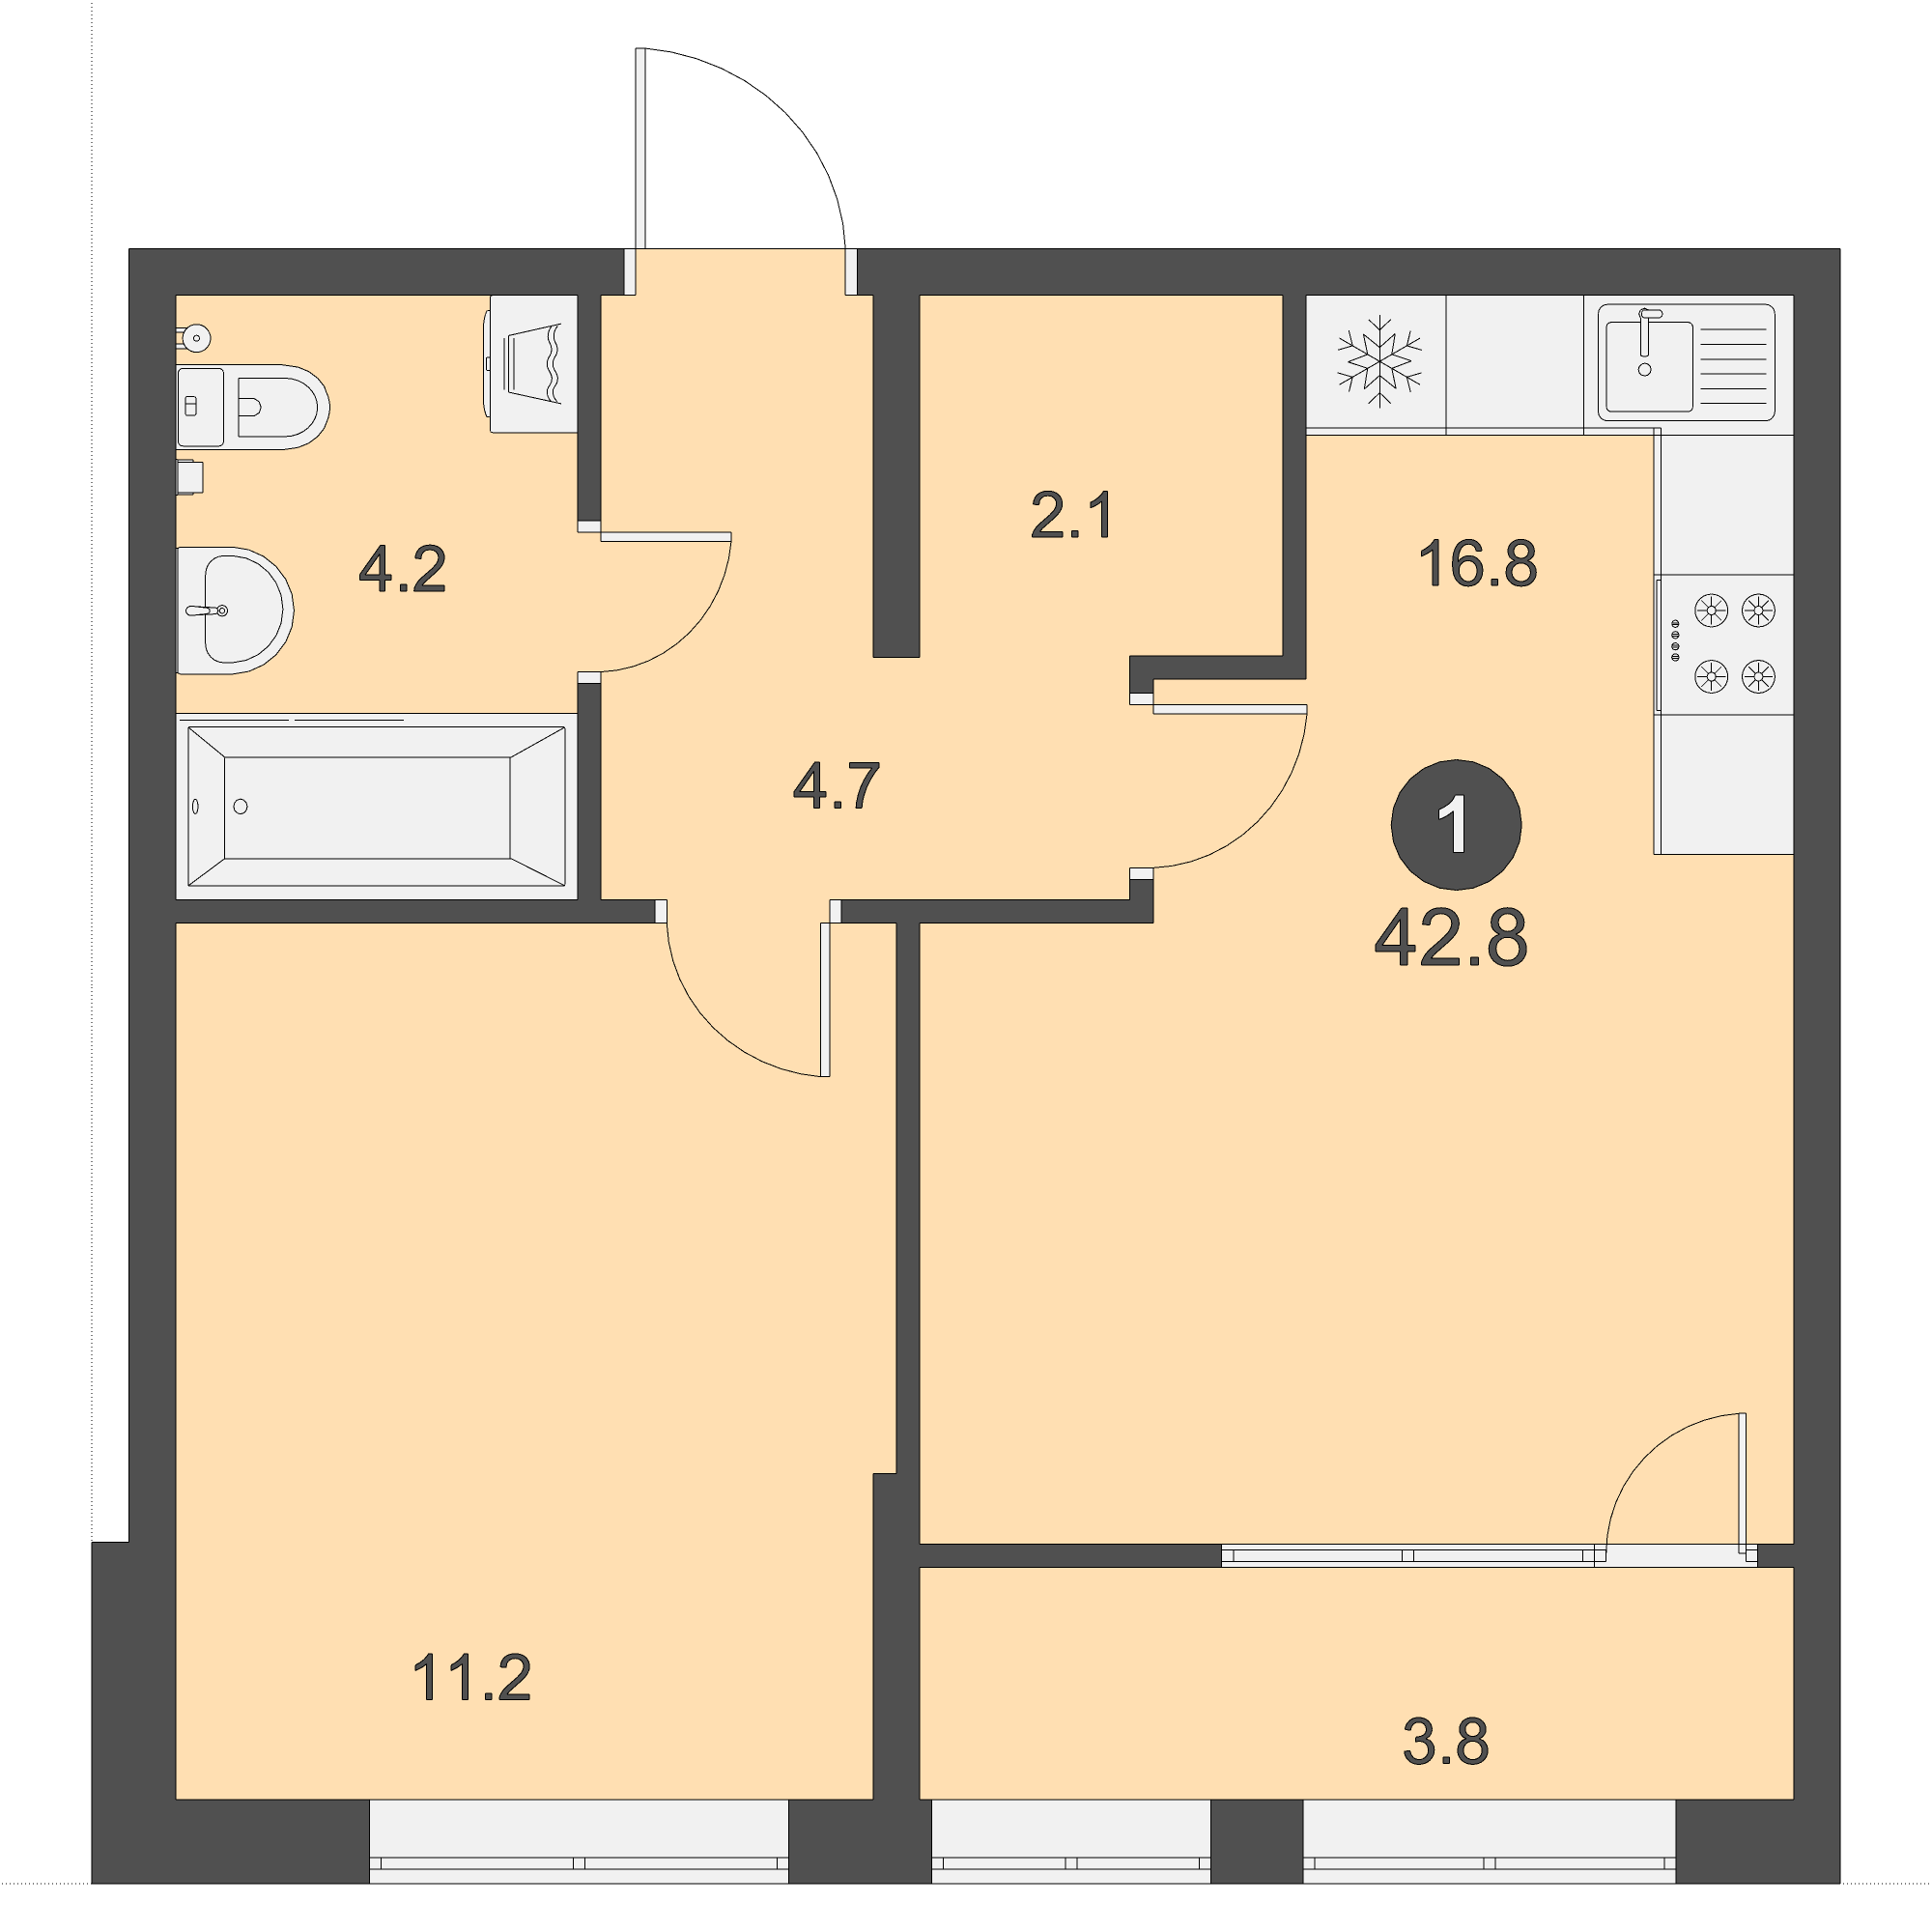 ЖК Дом на Бульваре, 1-комн кв 42,8 м2, за 5 564 000 ₽, 1 этаж